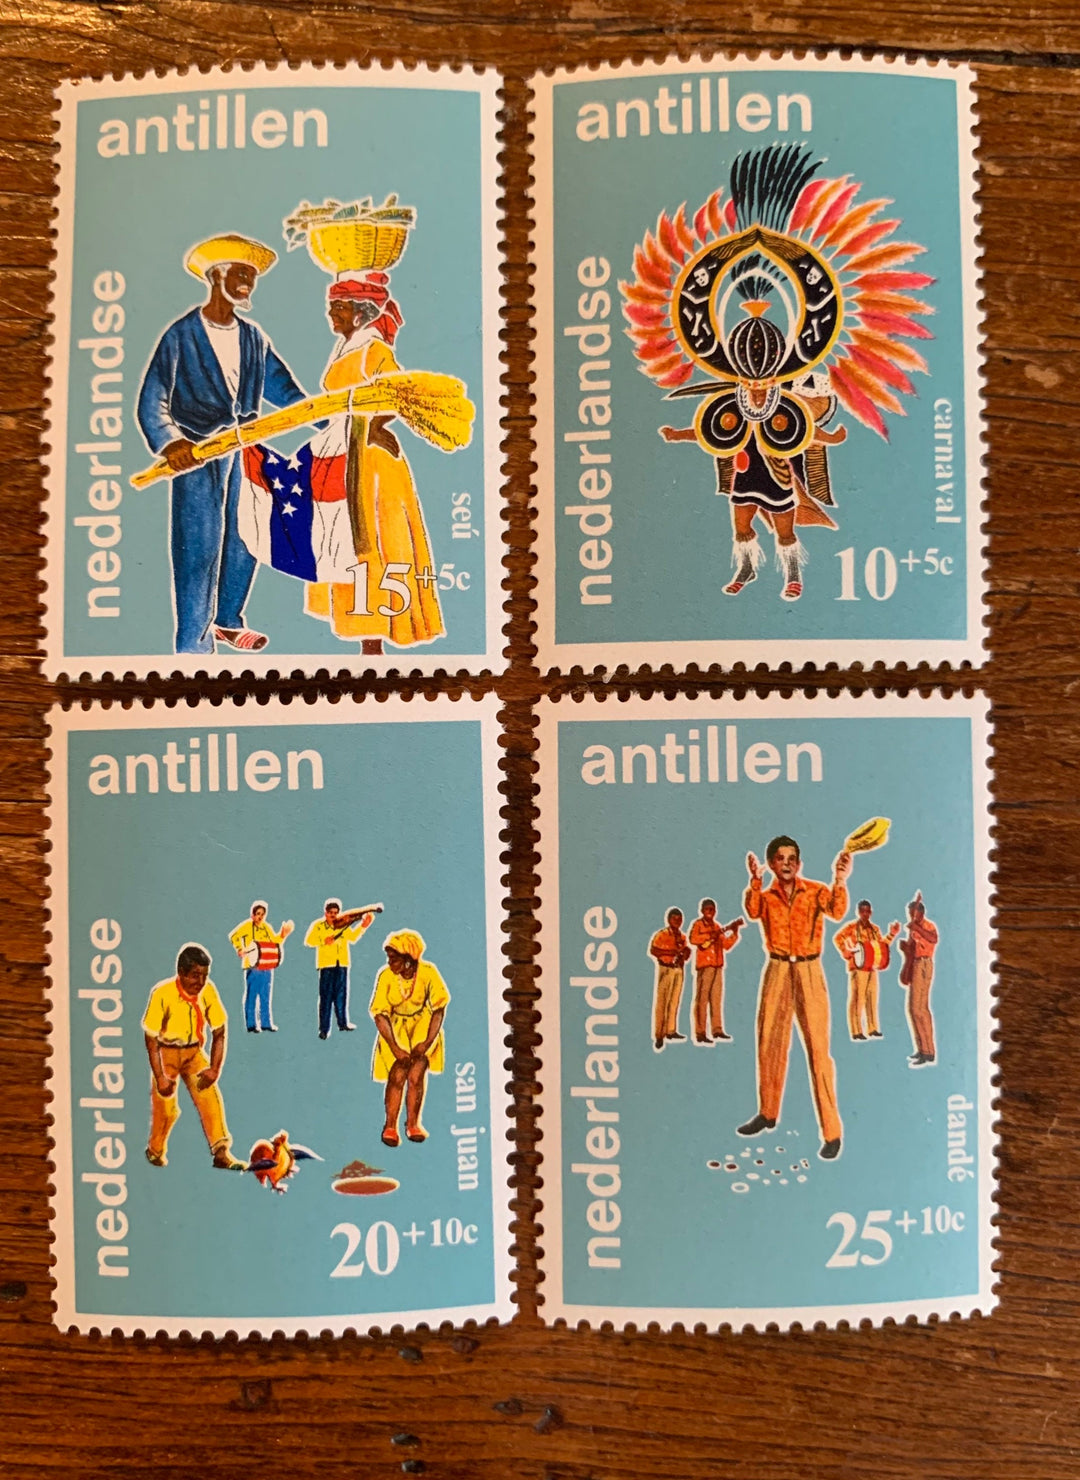 Netherlands Antilles- Original Vintage Postage Stamps-1969 Folklore